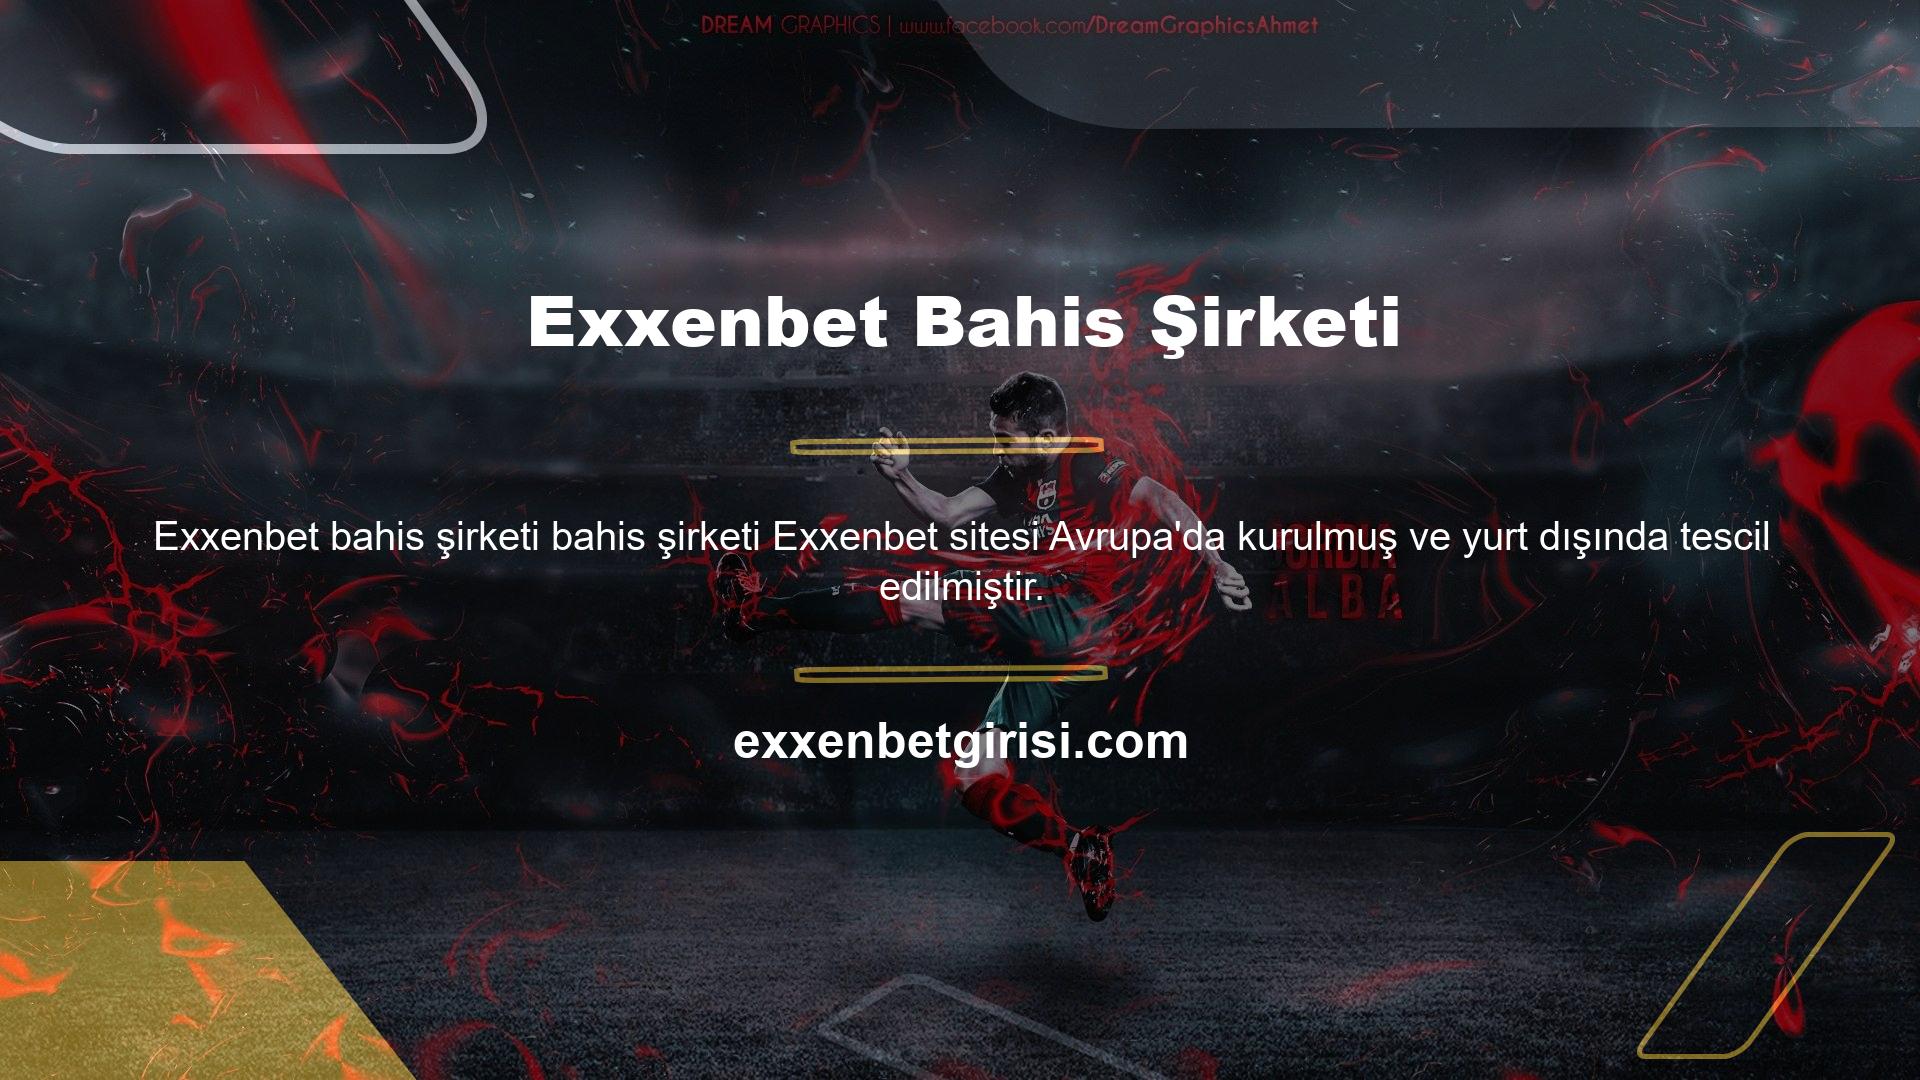 Exxenbet sitesi, yabancı kayıtlı bahis şirketlerinin yasaklanması nedeniyle ülkemizde yasa dışı olarak hizmet vermektedir